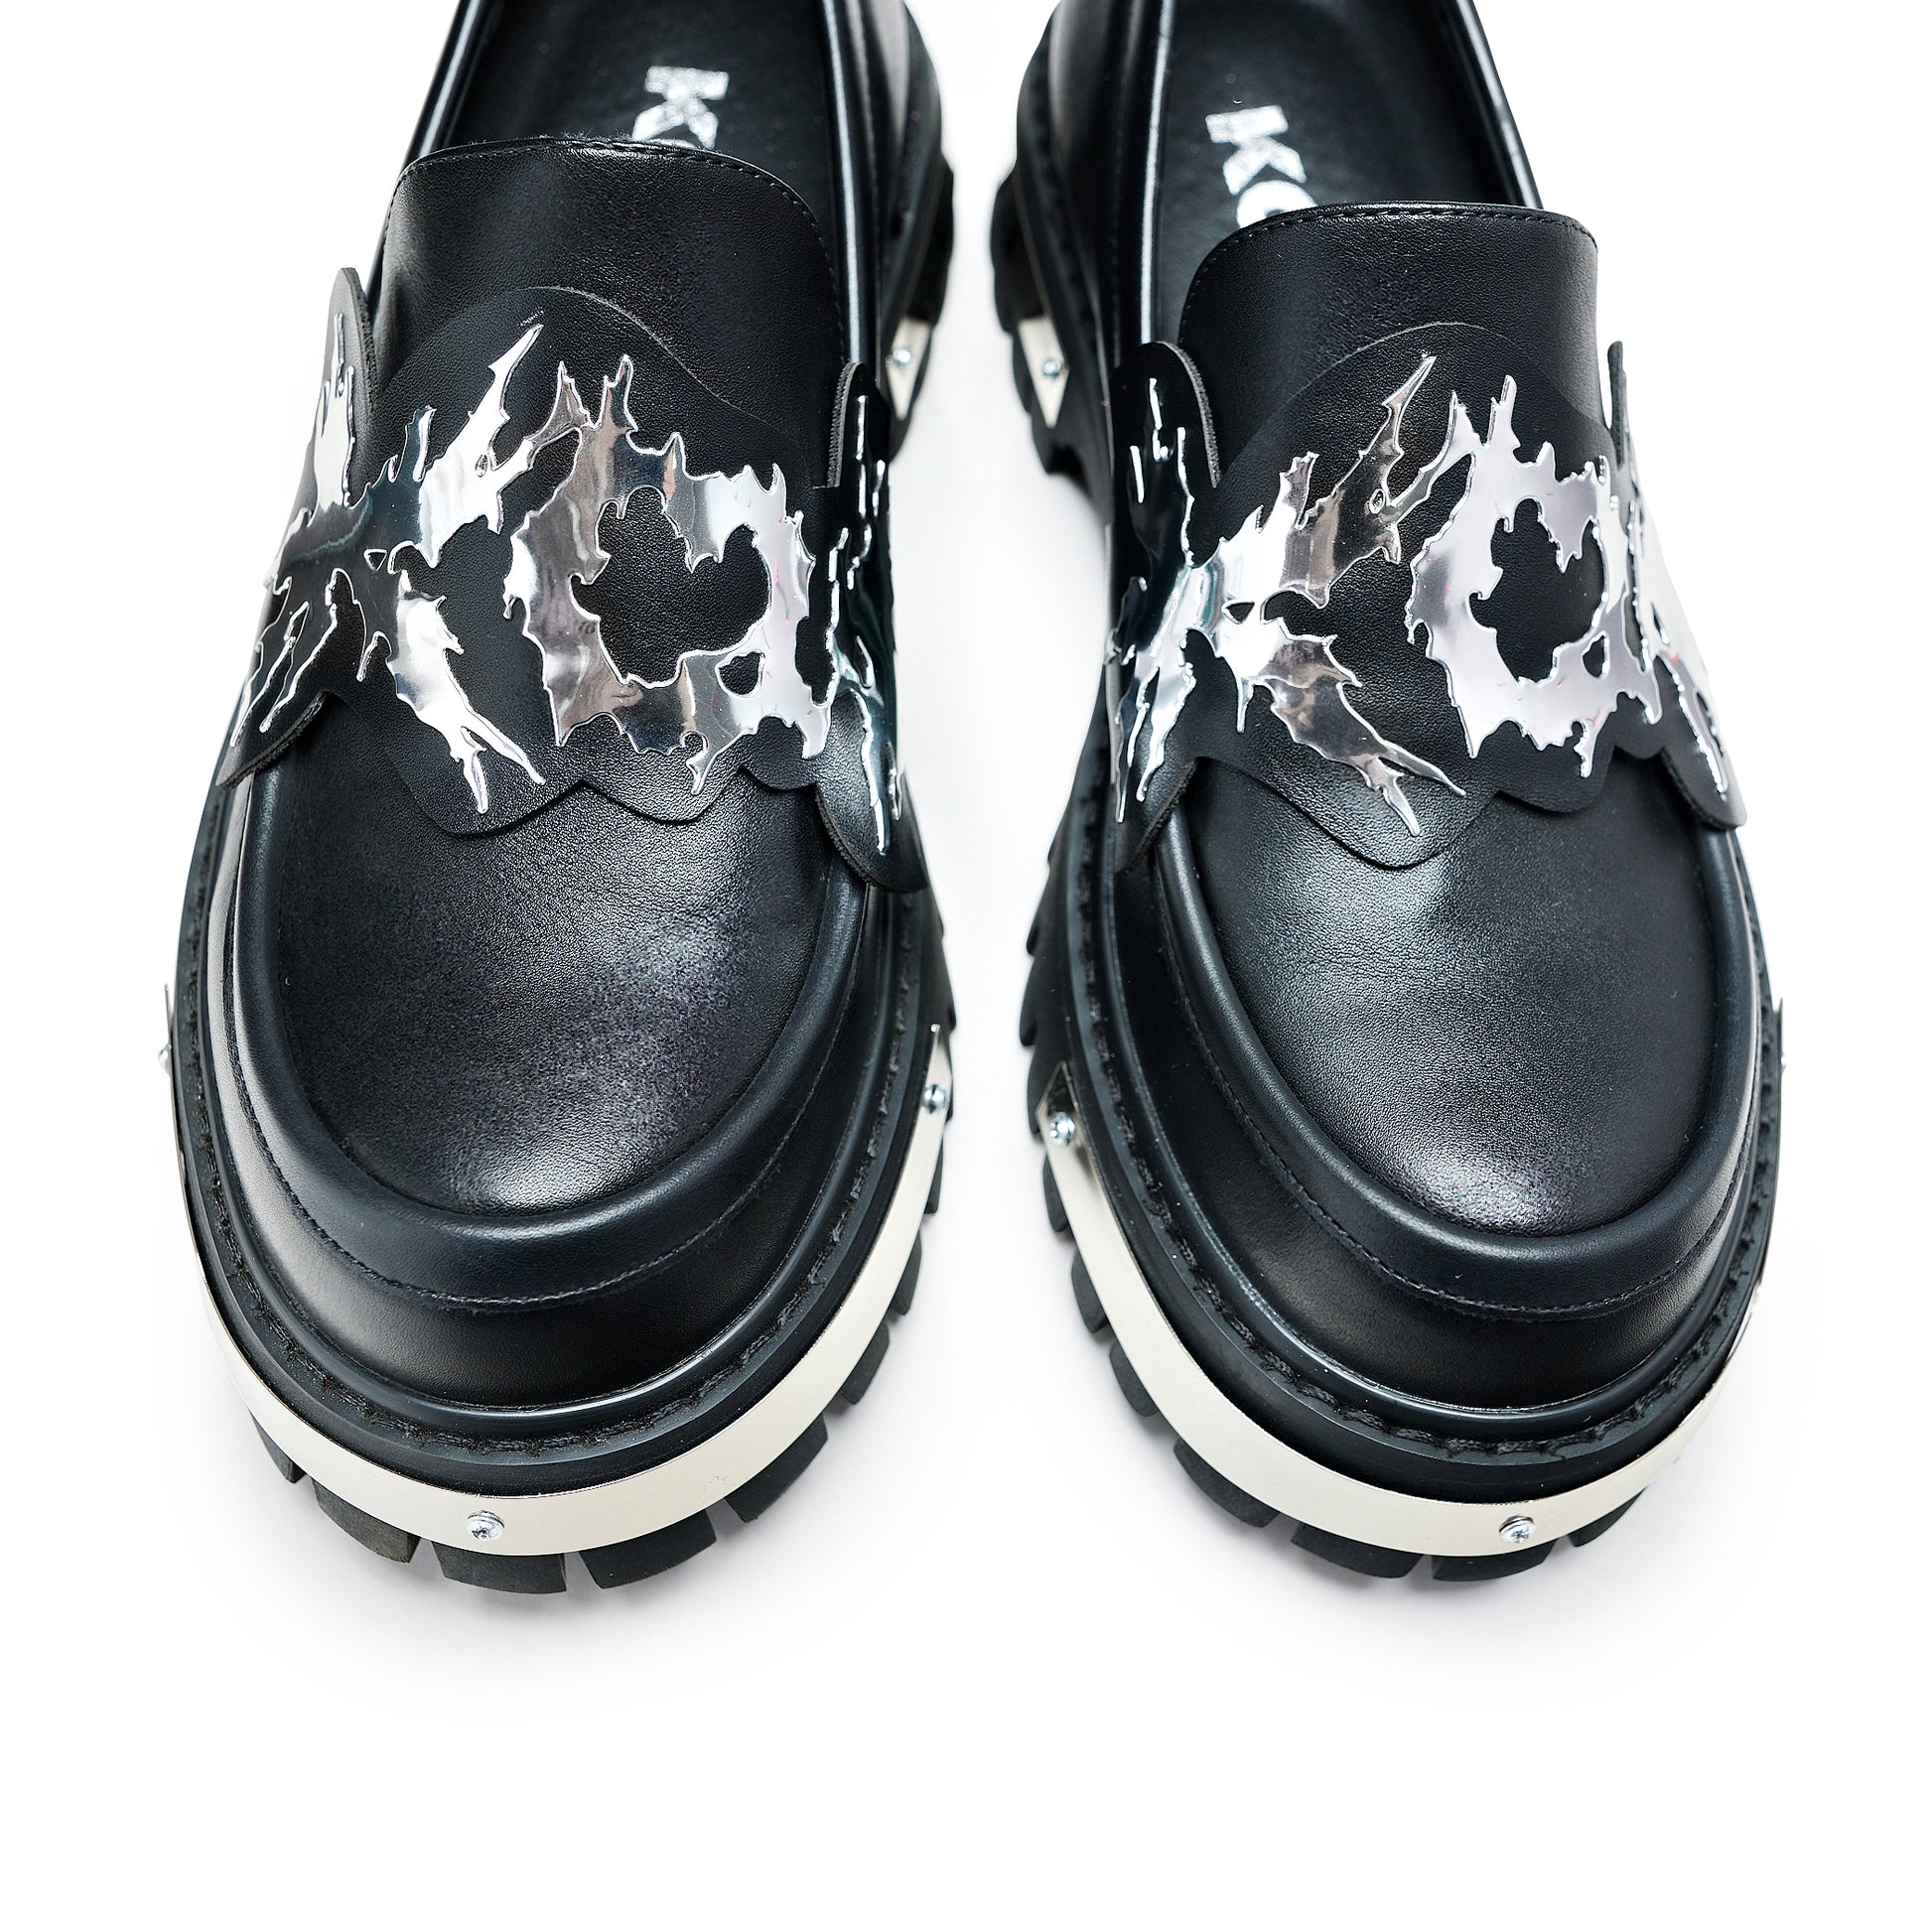 My Men's Metal Loafers - Black - Shoes - KOI Footwear - Black - Top View